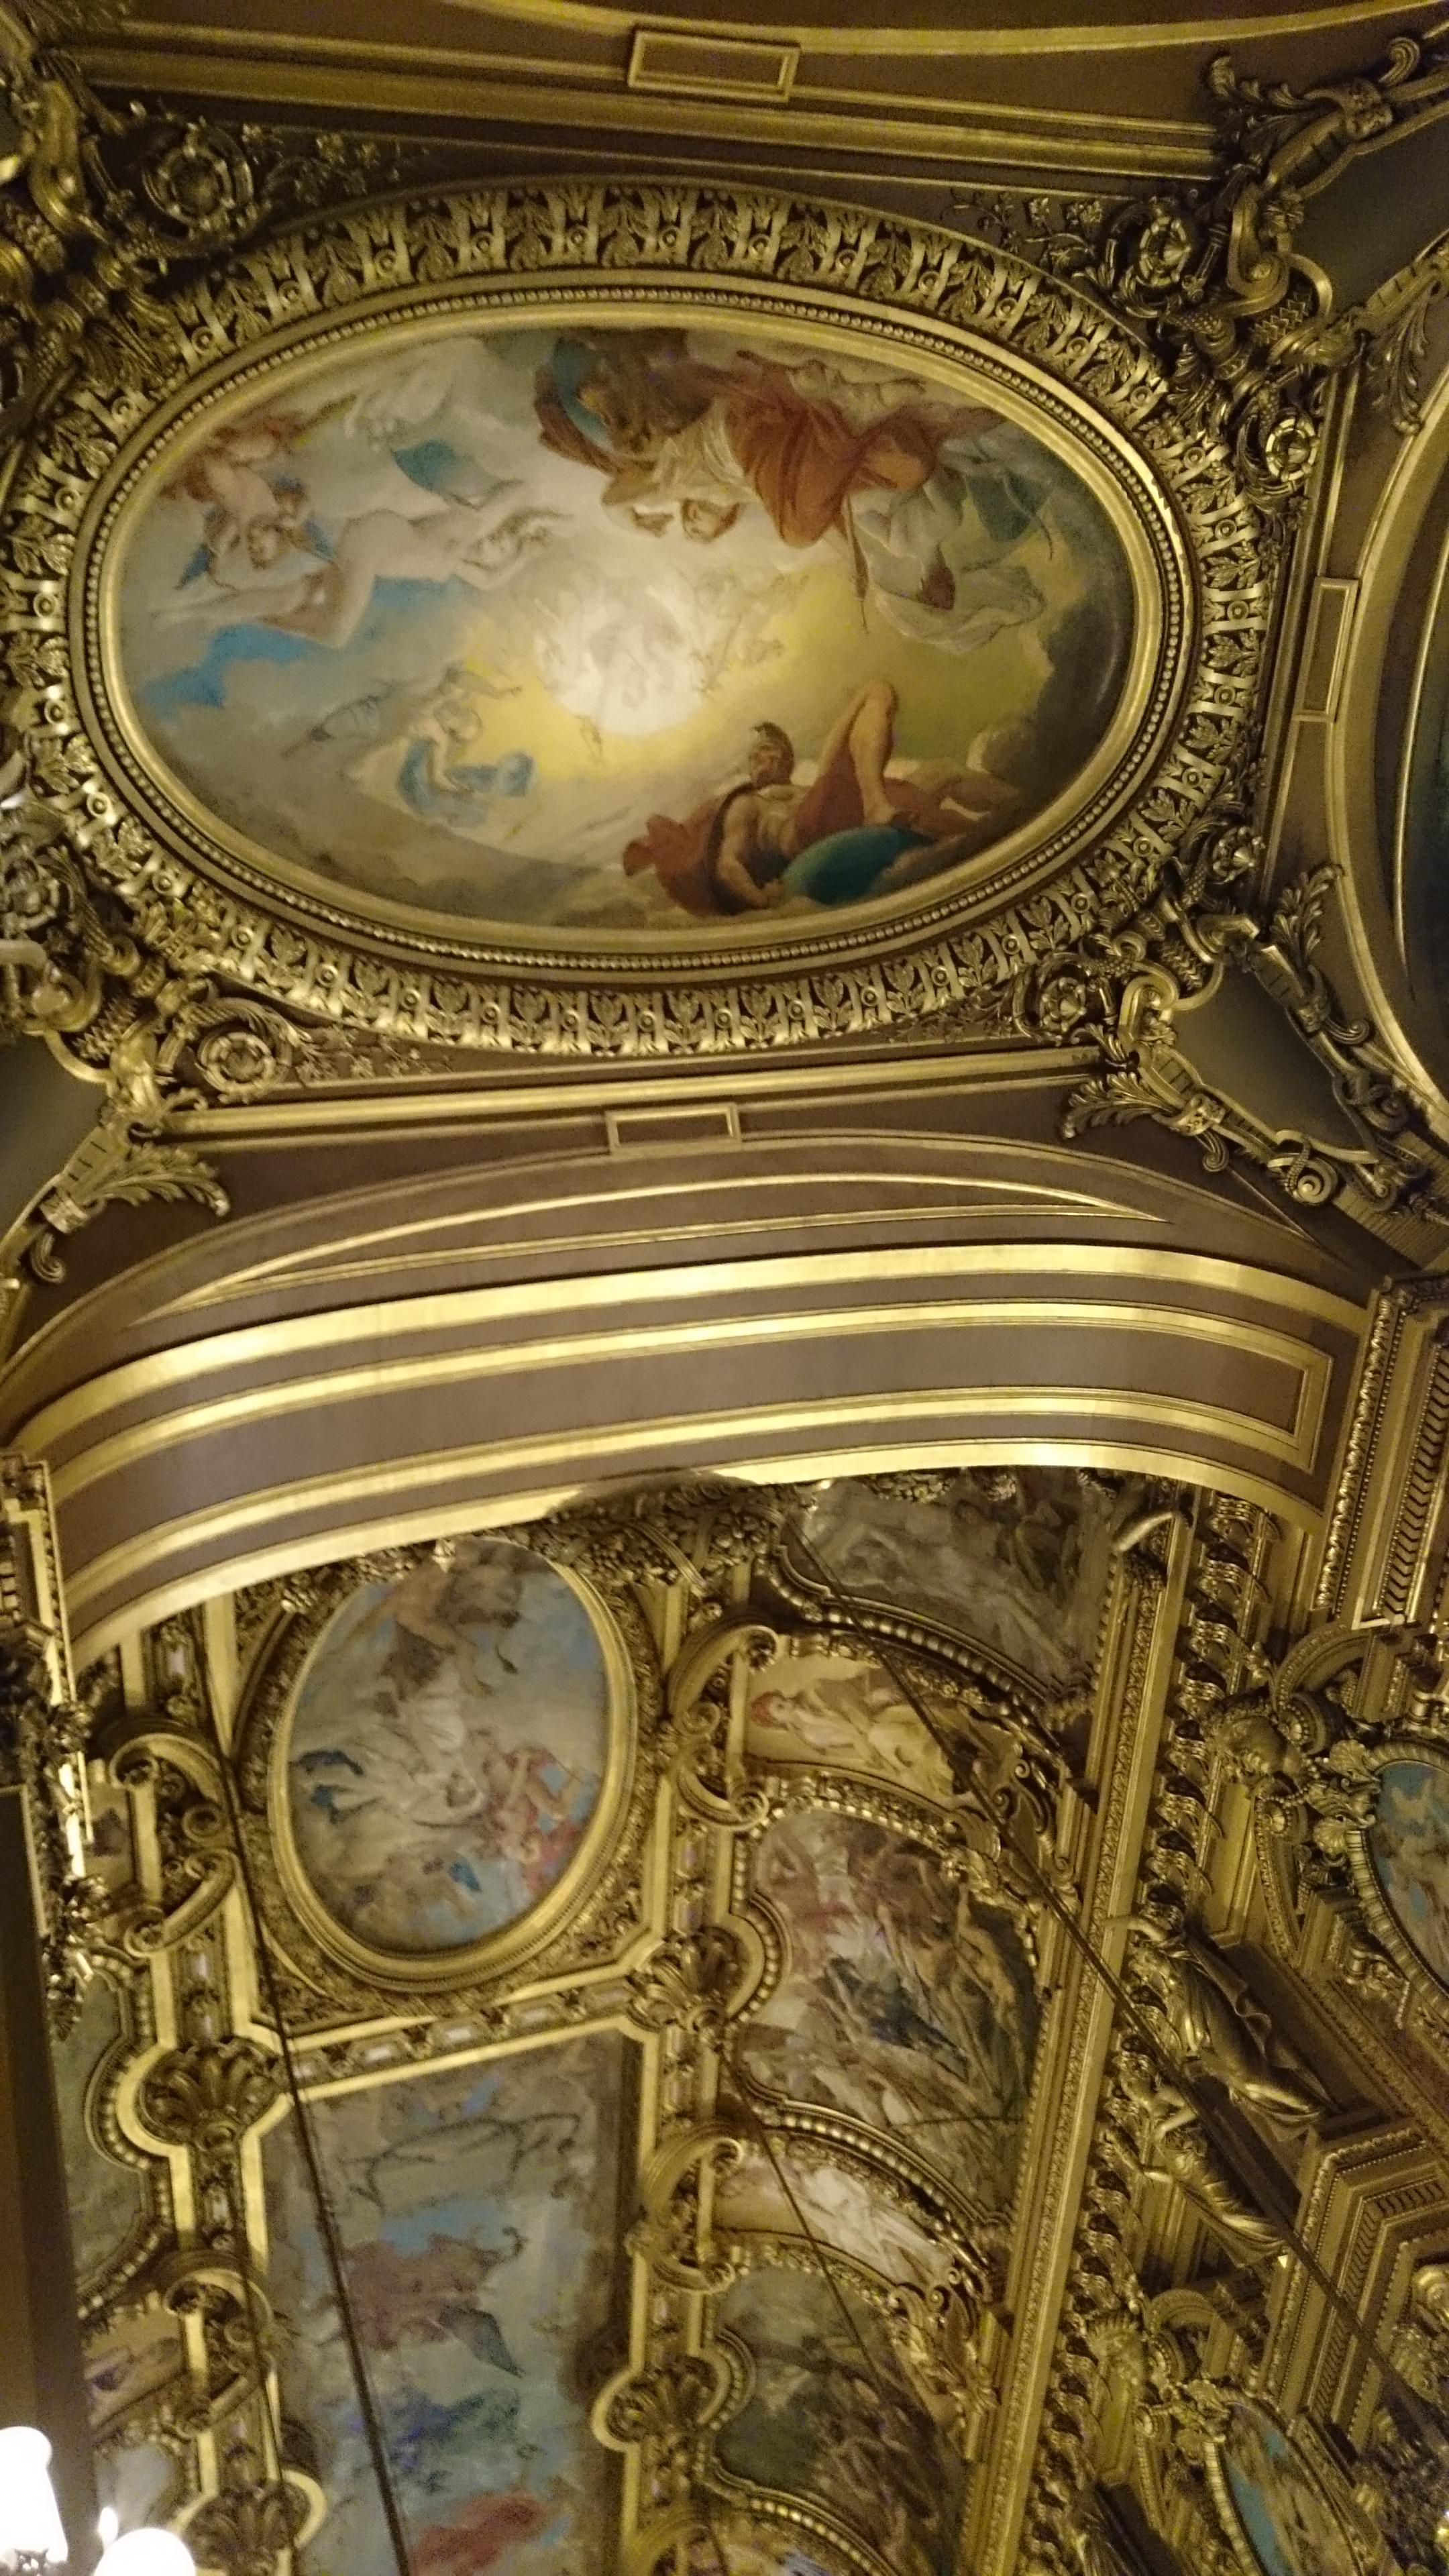 dsc 1045 - Una visita a la Opera de Paris (Palais Garnier)